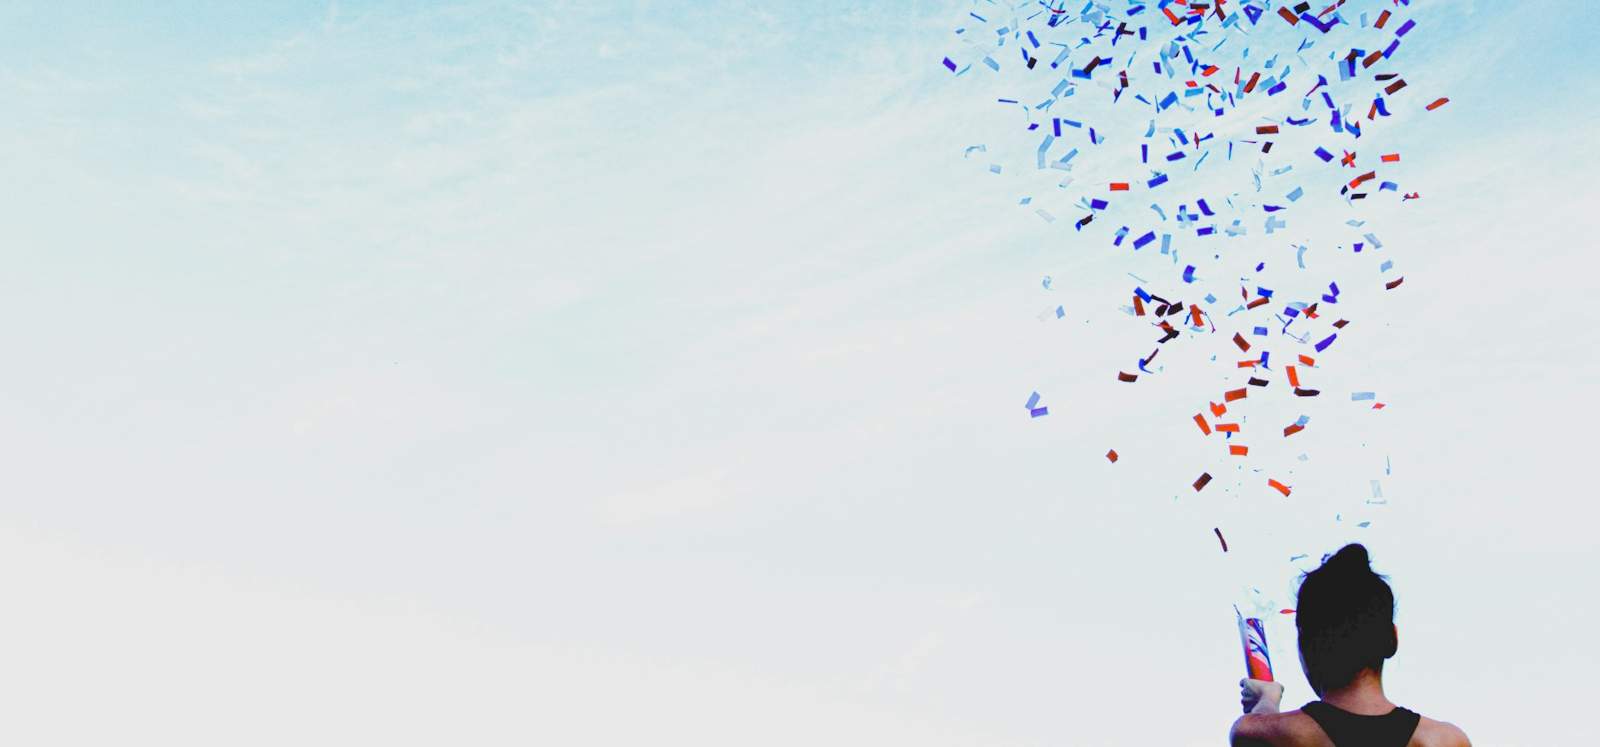 A person celebrates with a confetti popper, firing the confetti into the sky